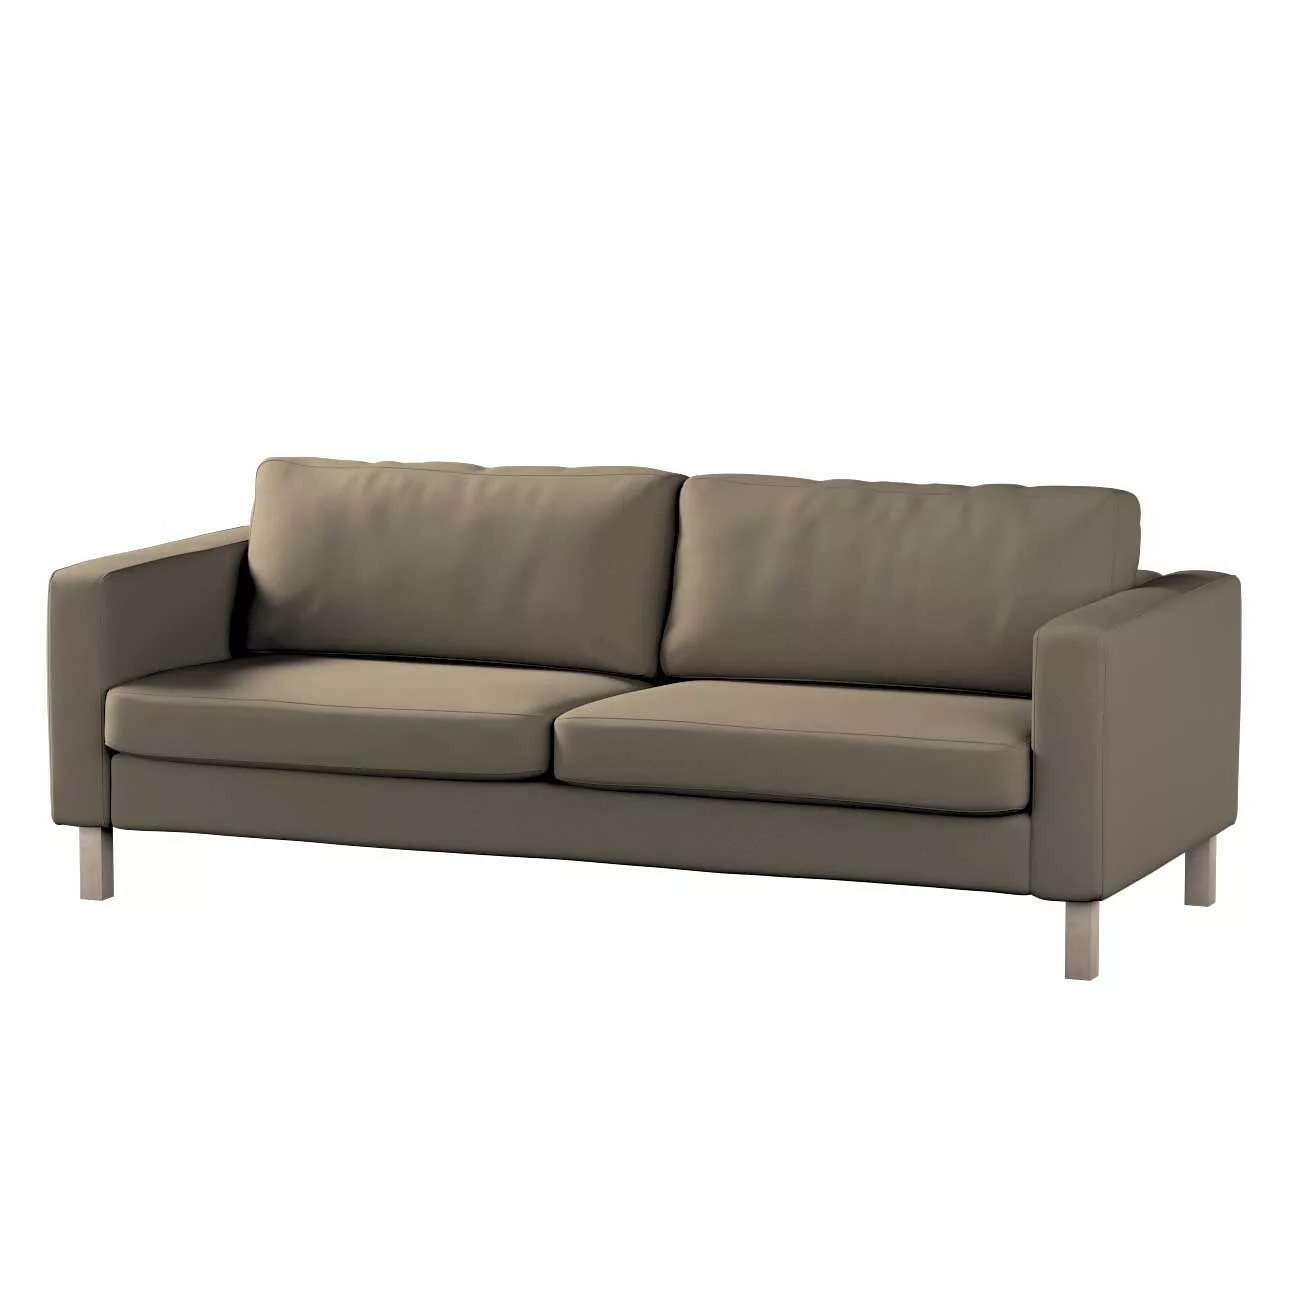 Bezug für Karlstad 3-Sitzer Sofa nicht ausklappbar, kurz, mokka, Bezug für günstig online kaufen